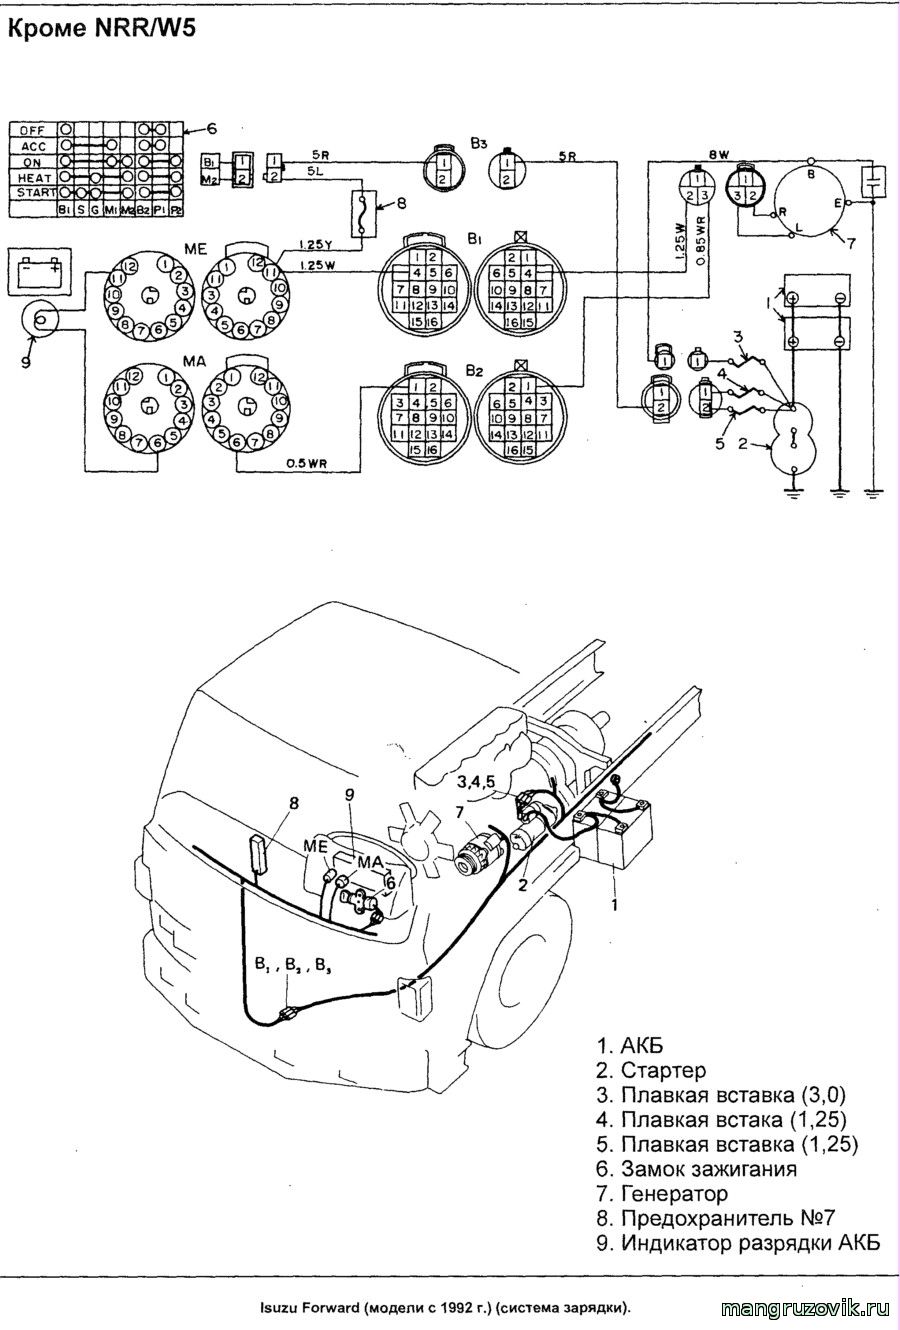 электрическая схема двигателя